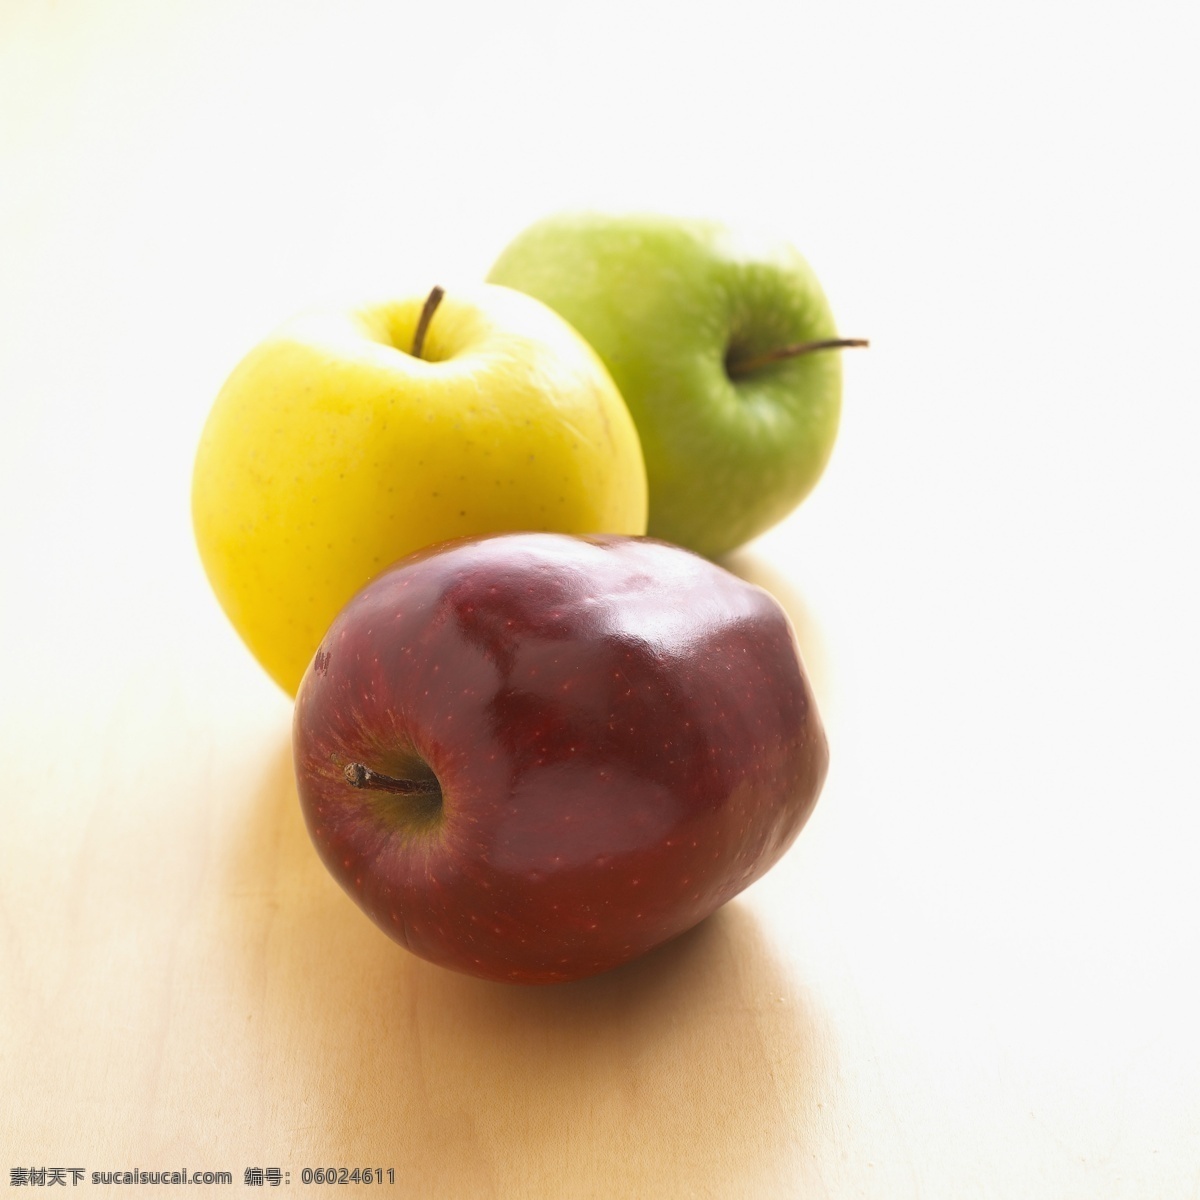 木板 上 苹果 红色 绿色 黄色 水果 苹果图片 餐饮美食